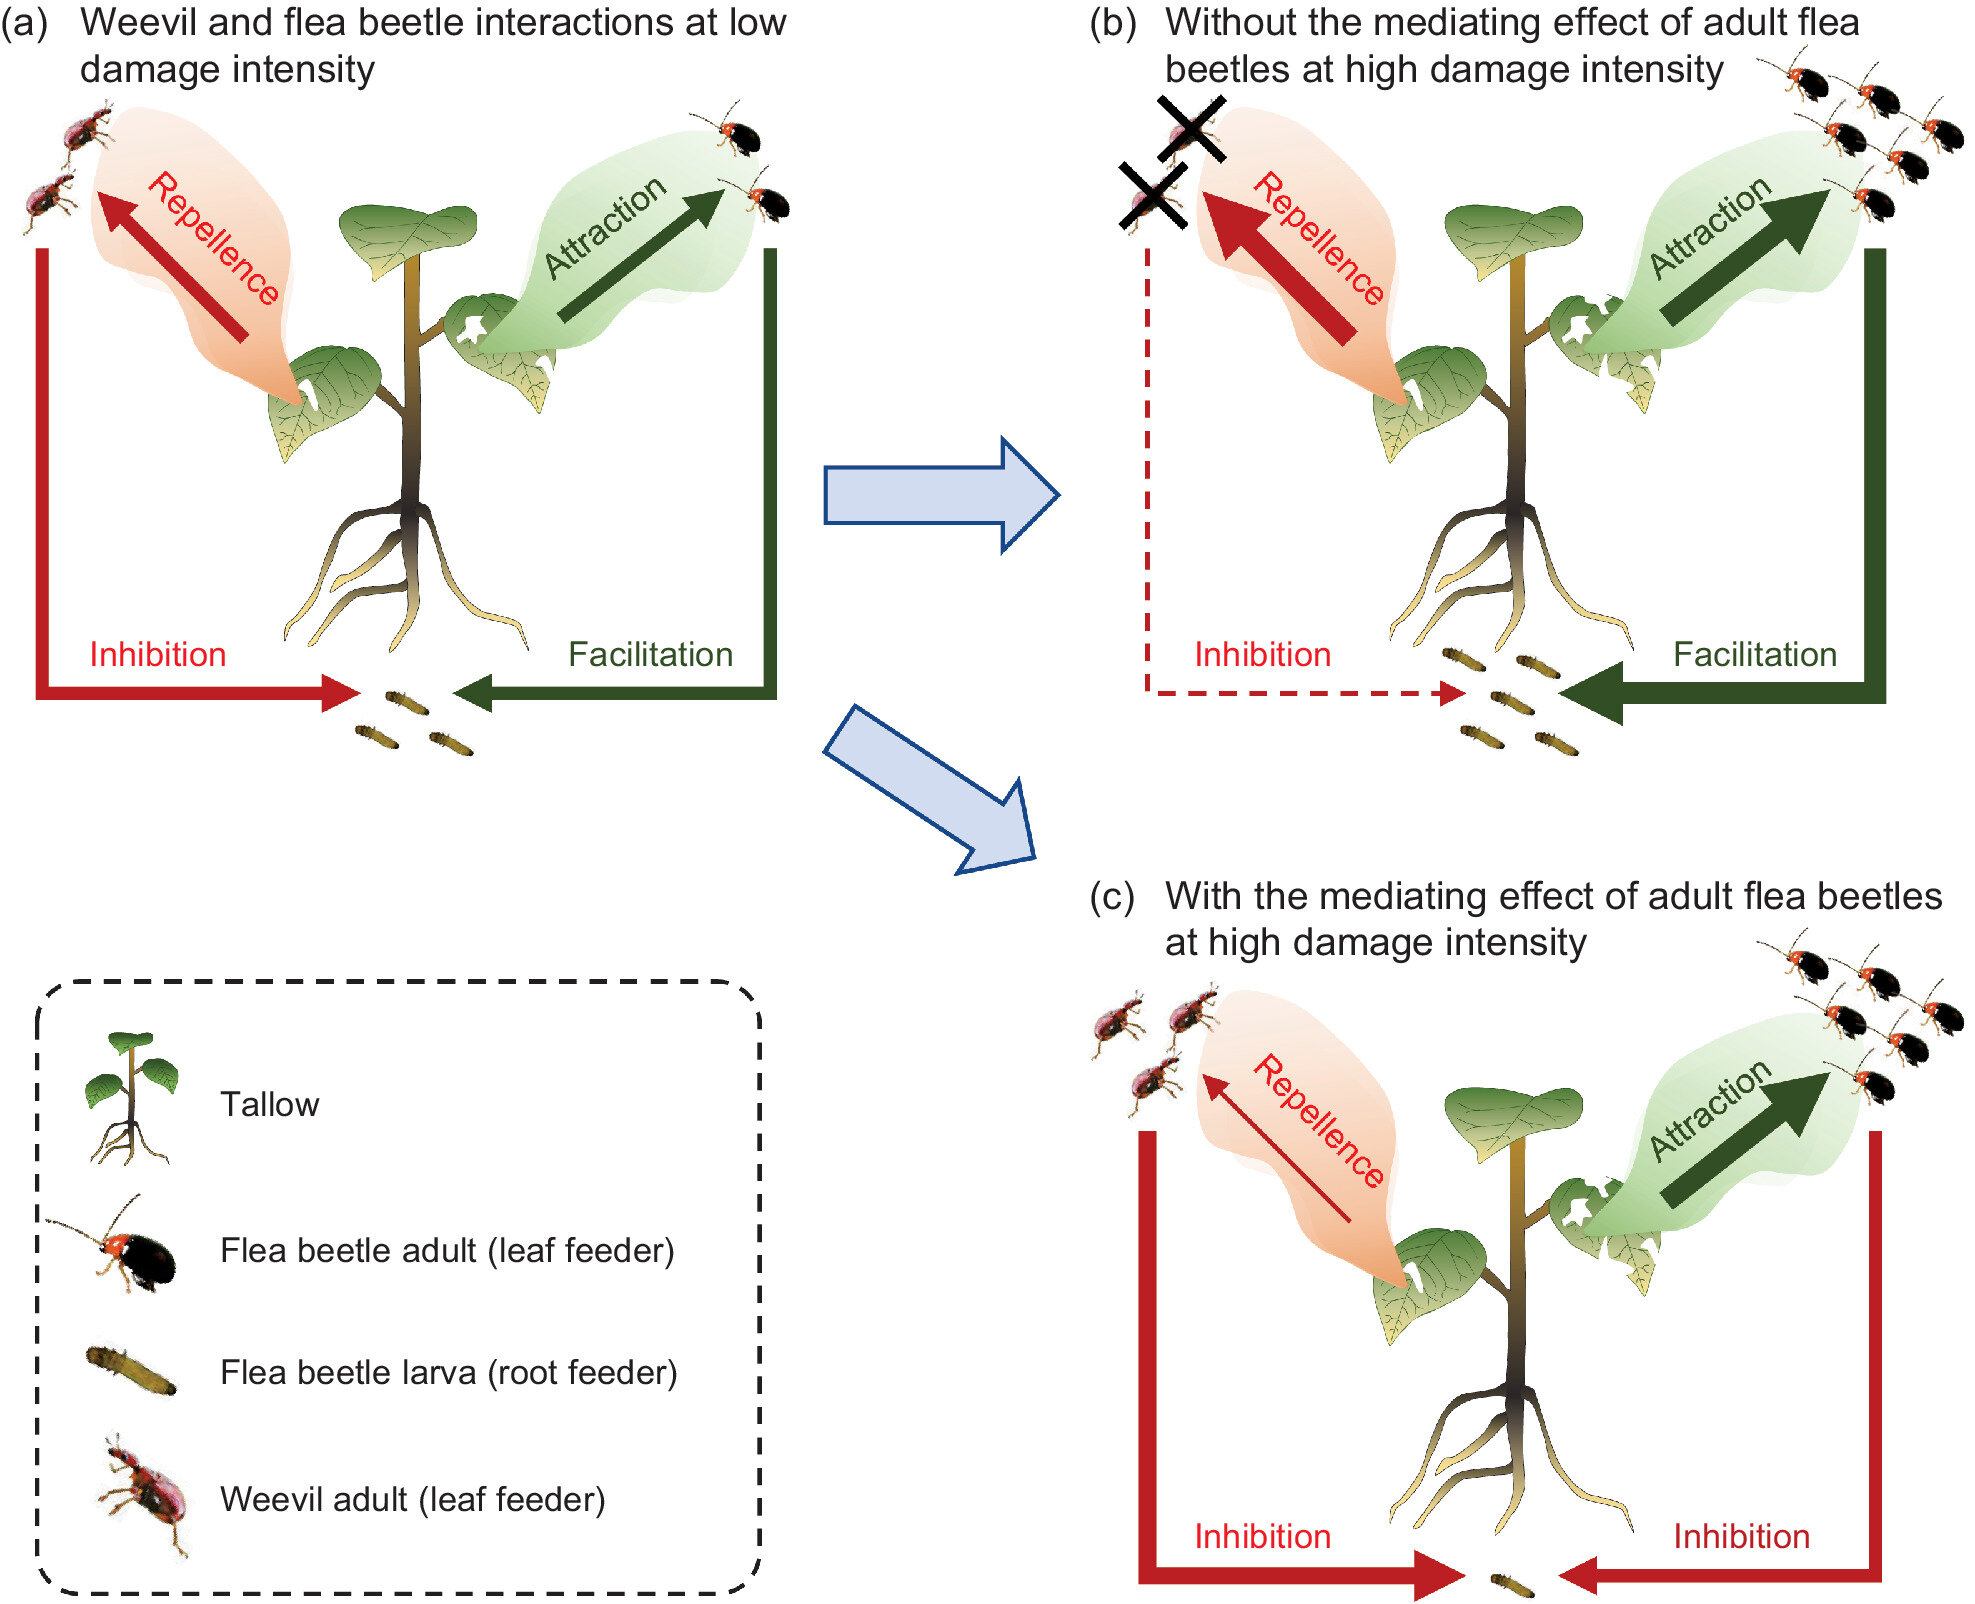 La identidad y la densidad de los herbívoros interactúan para determinar las interacciones entre herbívoros mediadas por plantas